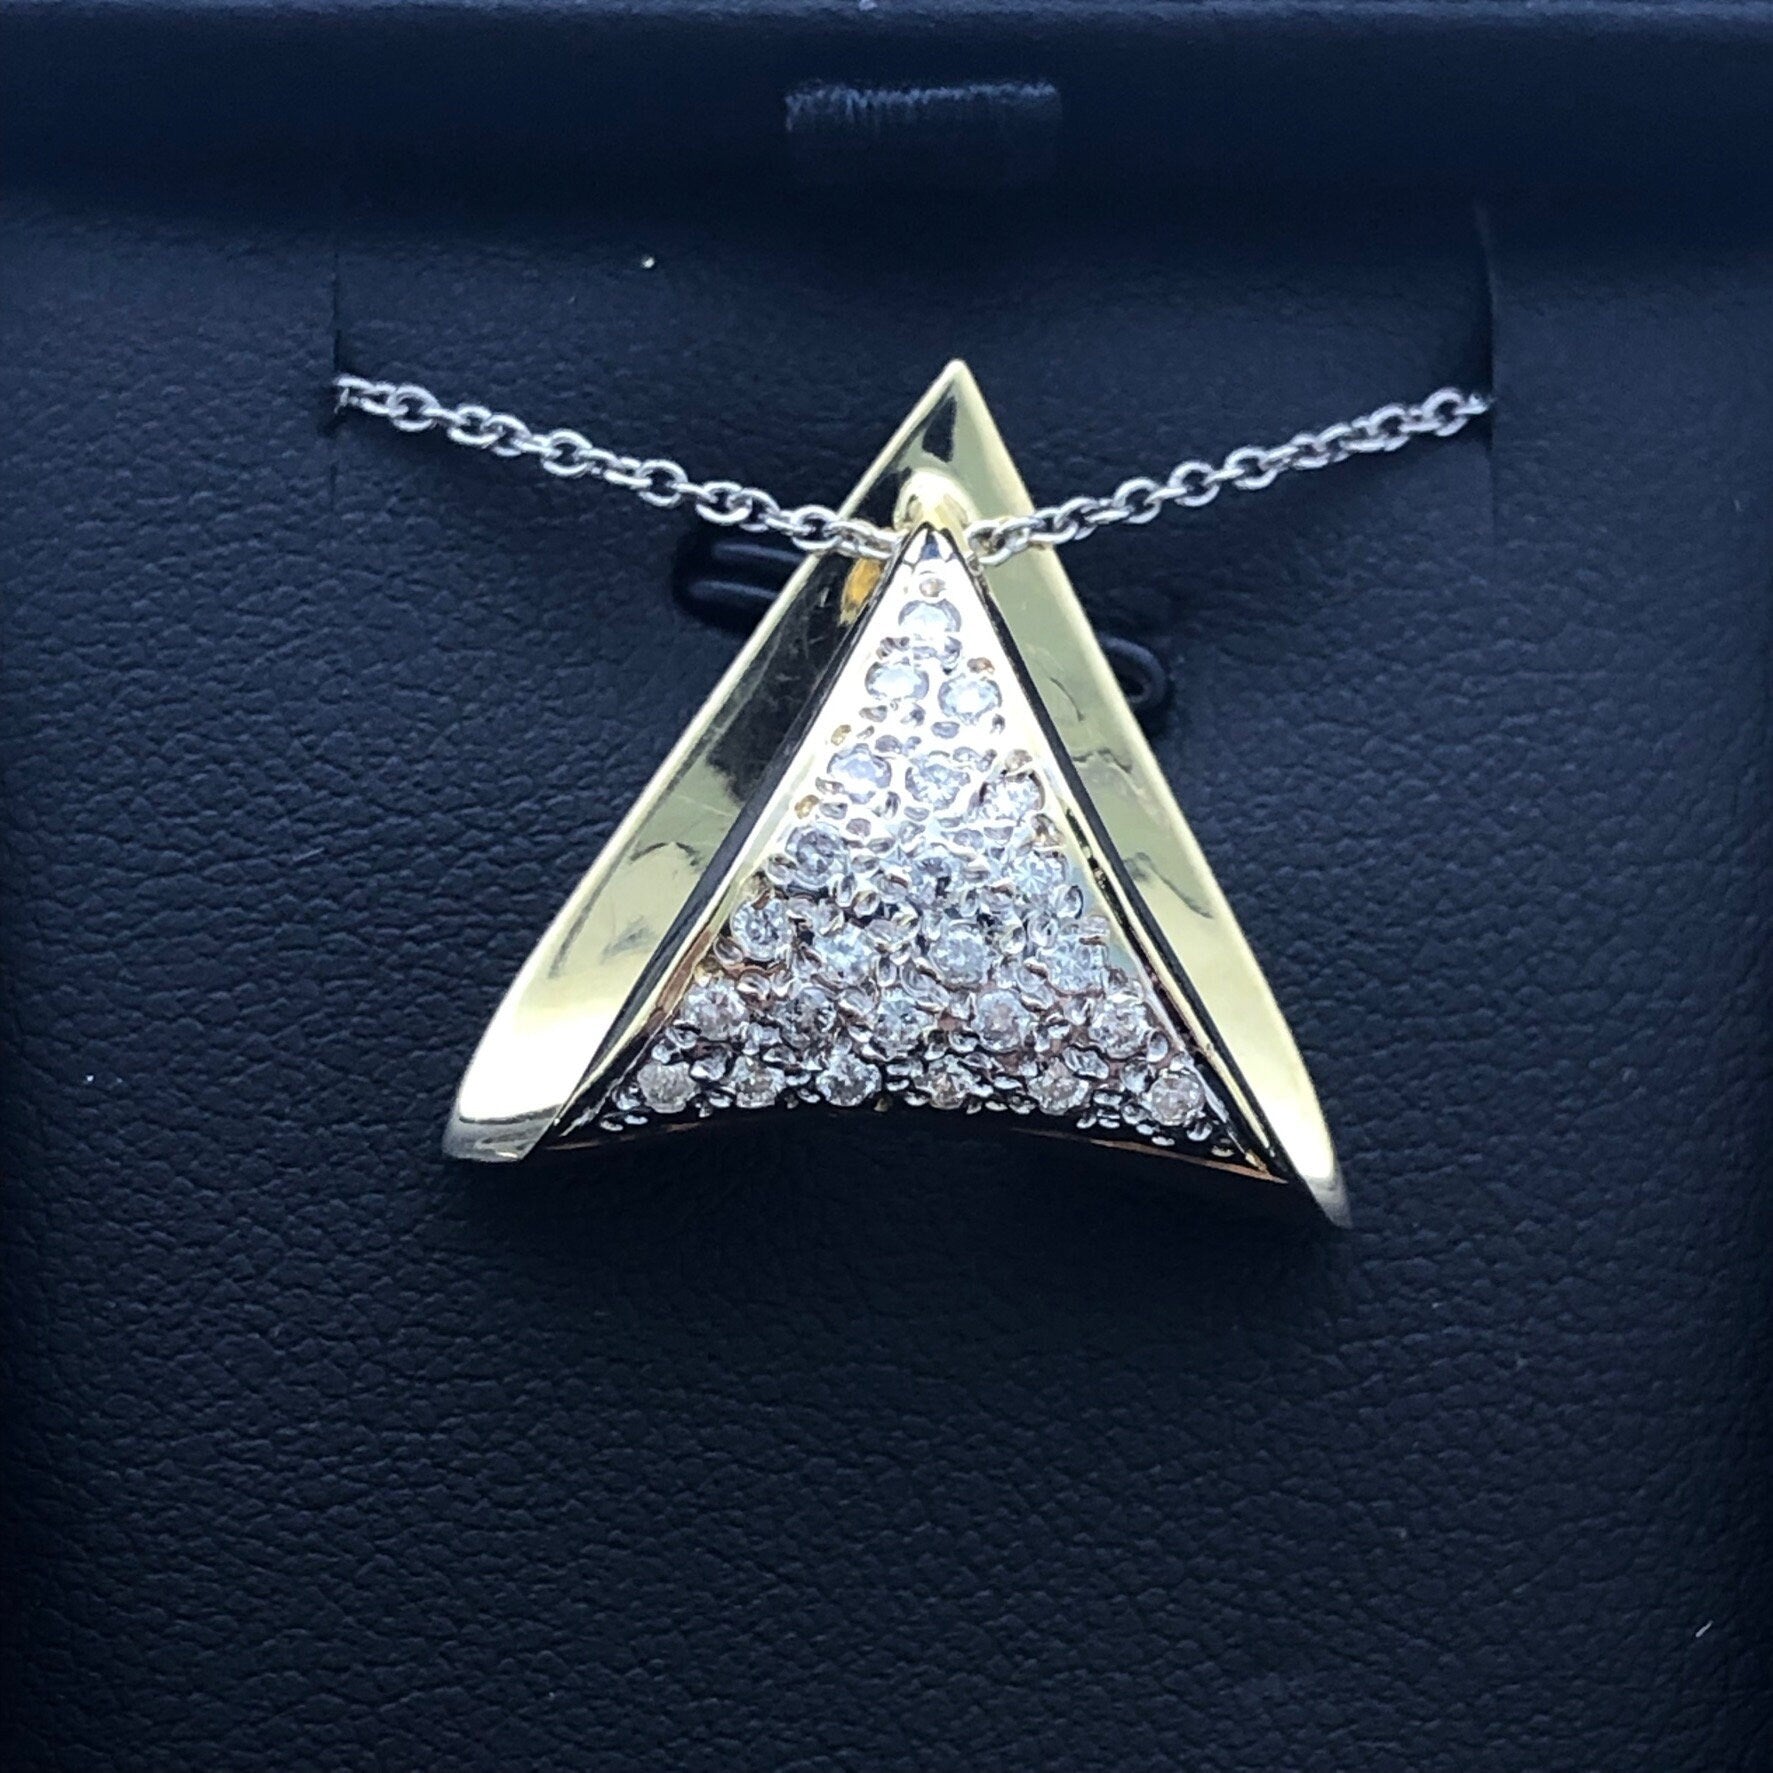 LIV 14k Yellow Gold & Diamonds Trillion Cut Design Pave Halo Design Pendant Necklace